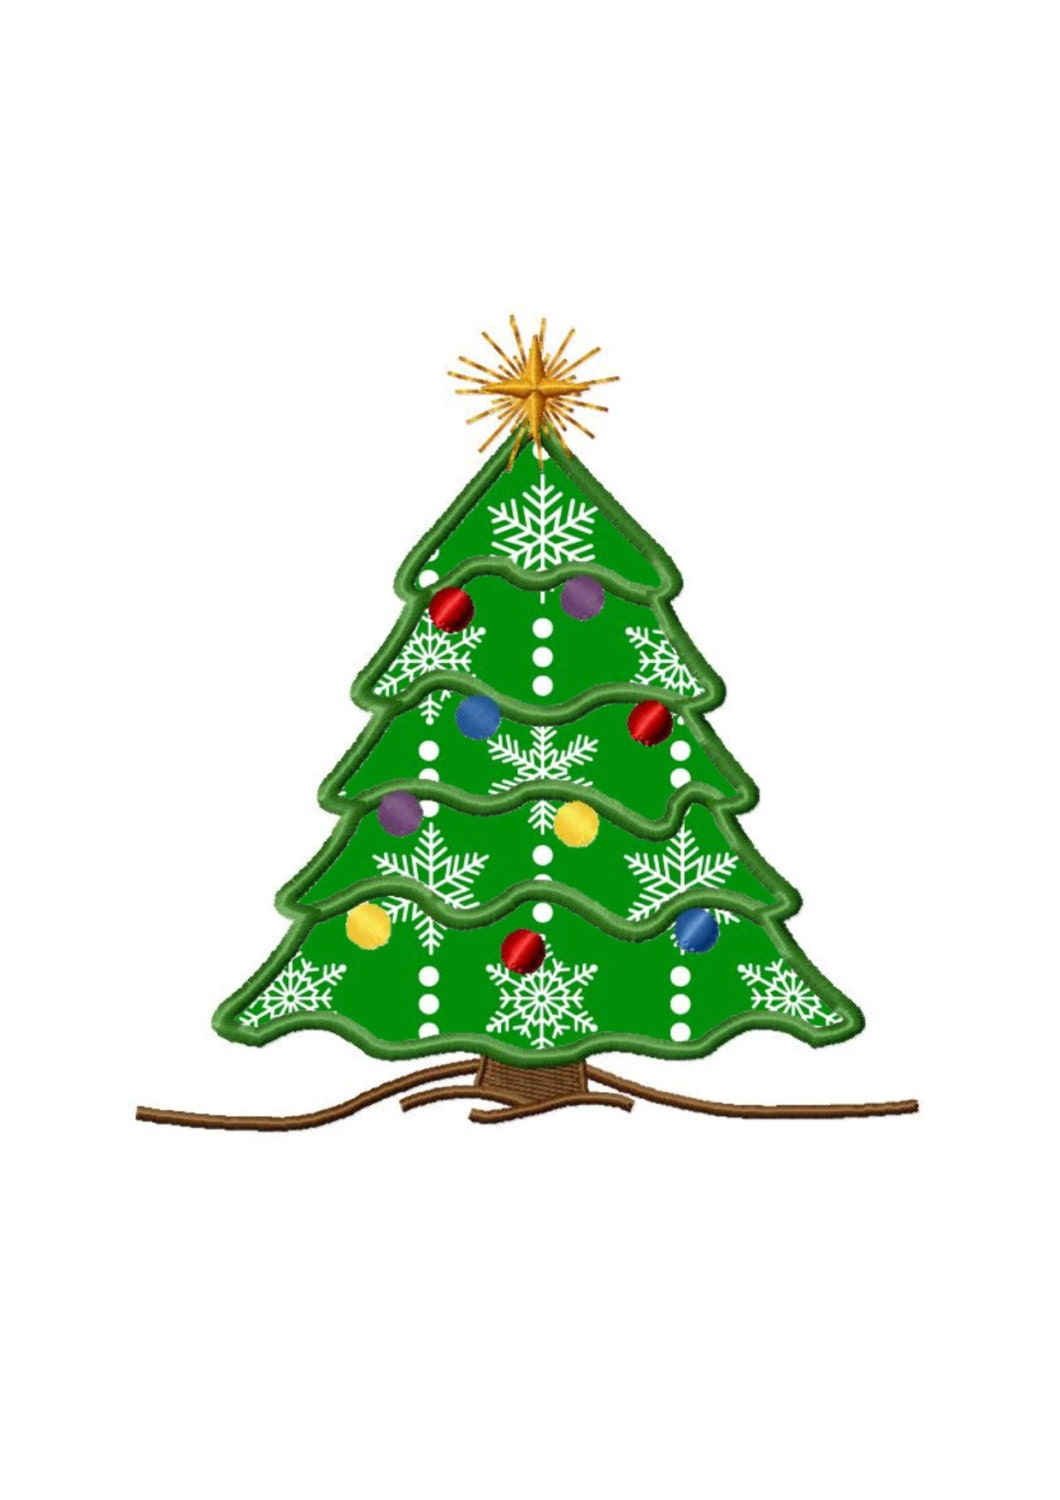 Christmas Tree 2 Applique Machine Embroidery DESIGN NO. 331